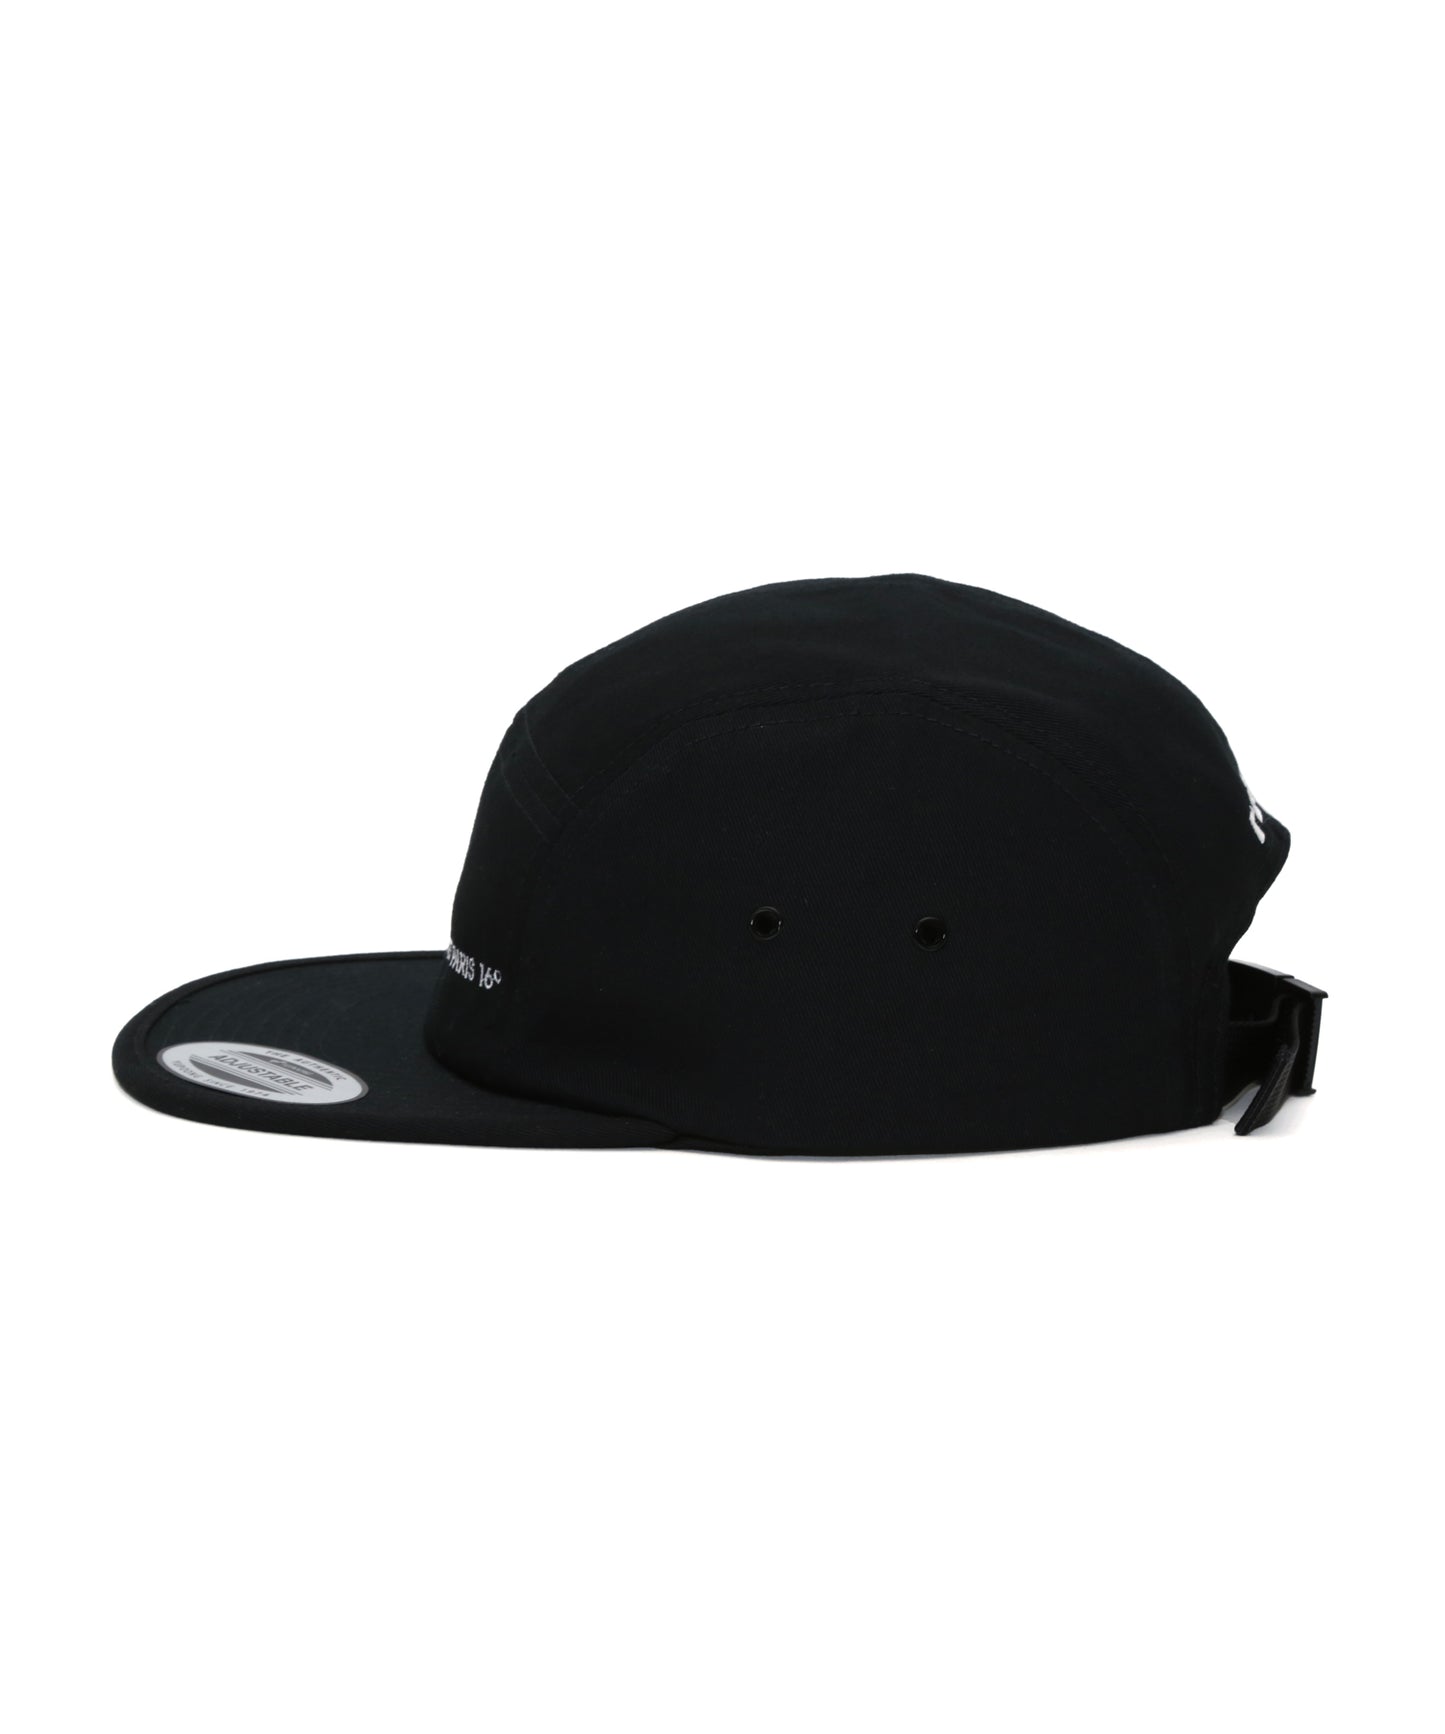 JOCKEY CAMPER CAP